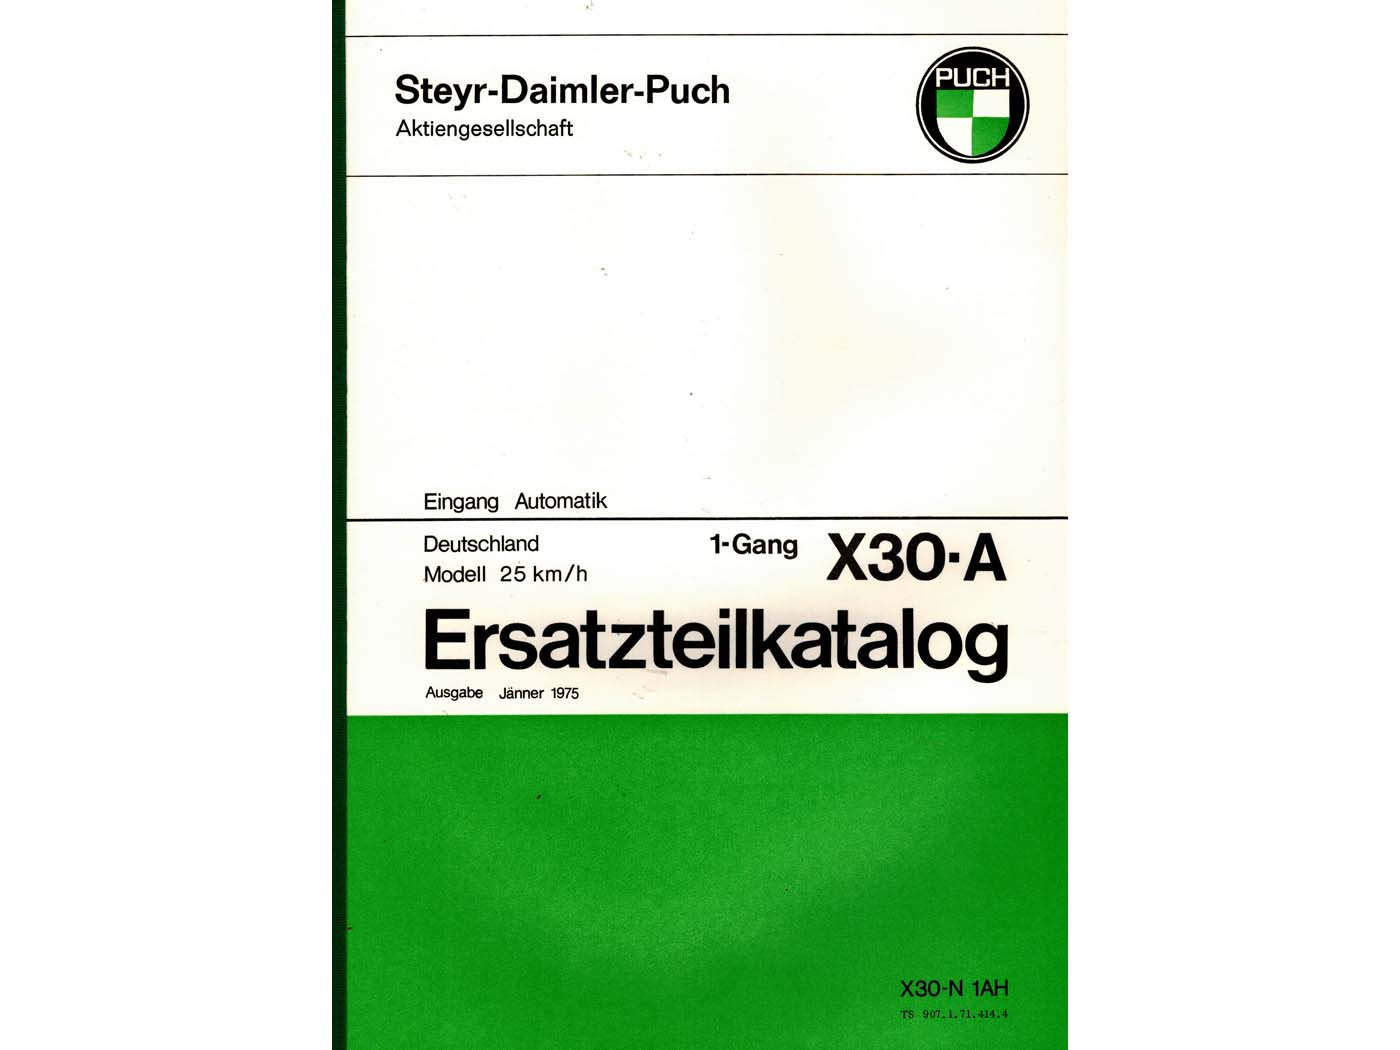 Ersatzteil Katalog 55 Seiten DIN A4 voor Puch X 30-A